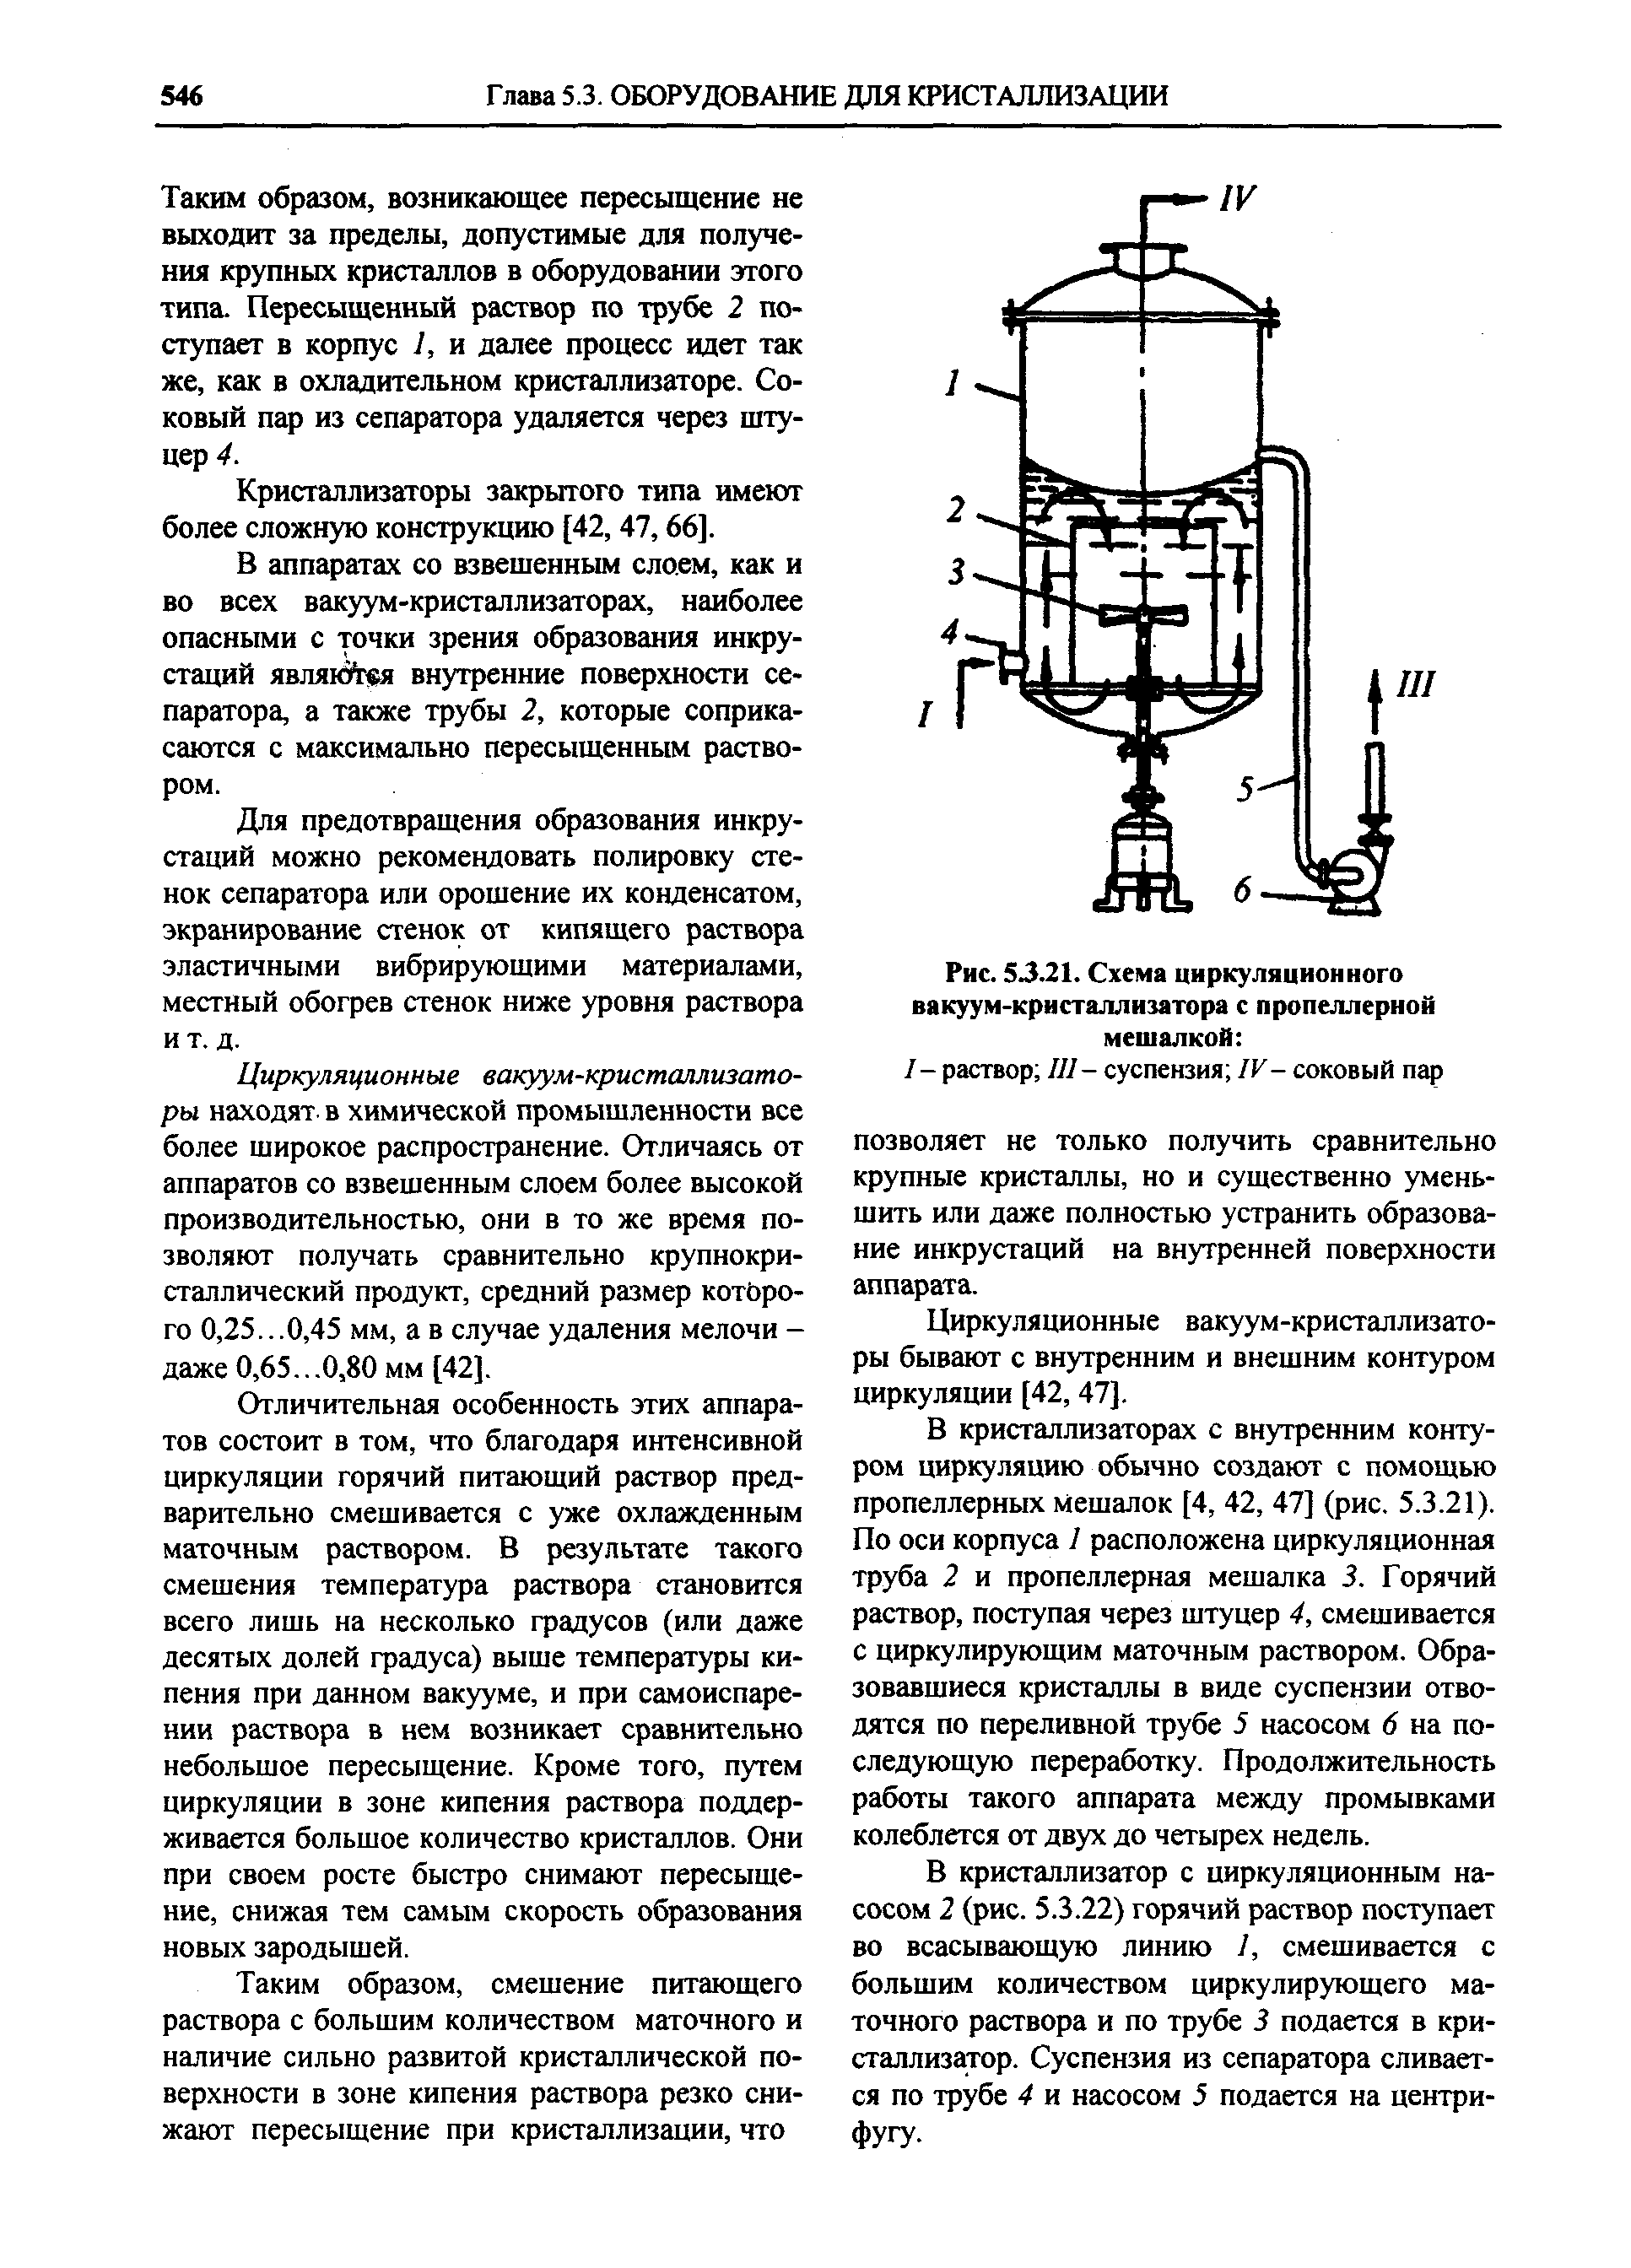 Рис. 5Л.21. Схема циркуляционного вакуум-кристаллизатора с пропеллерной мешалкой 
